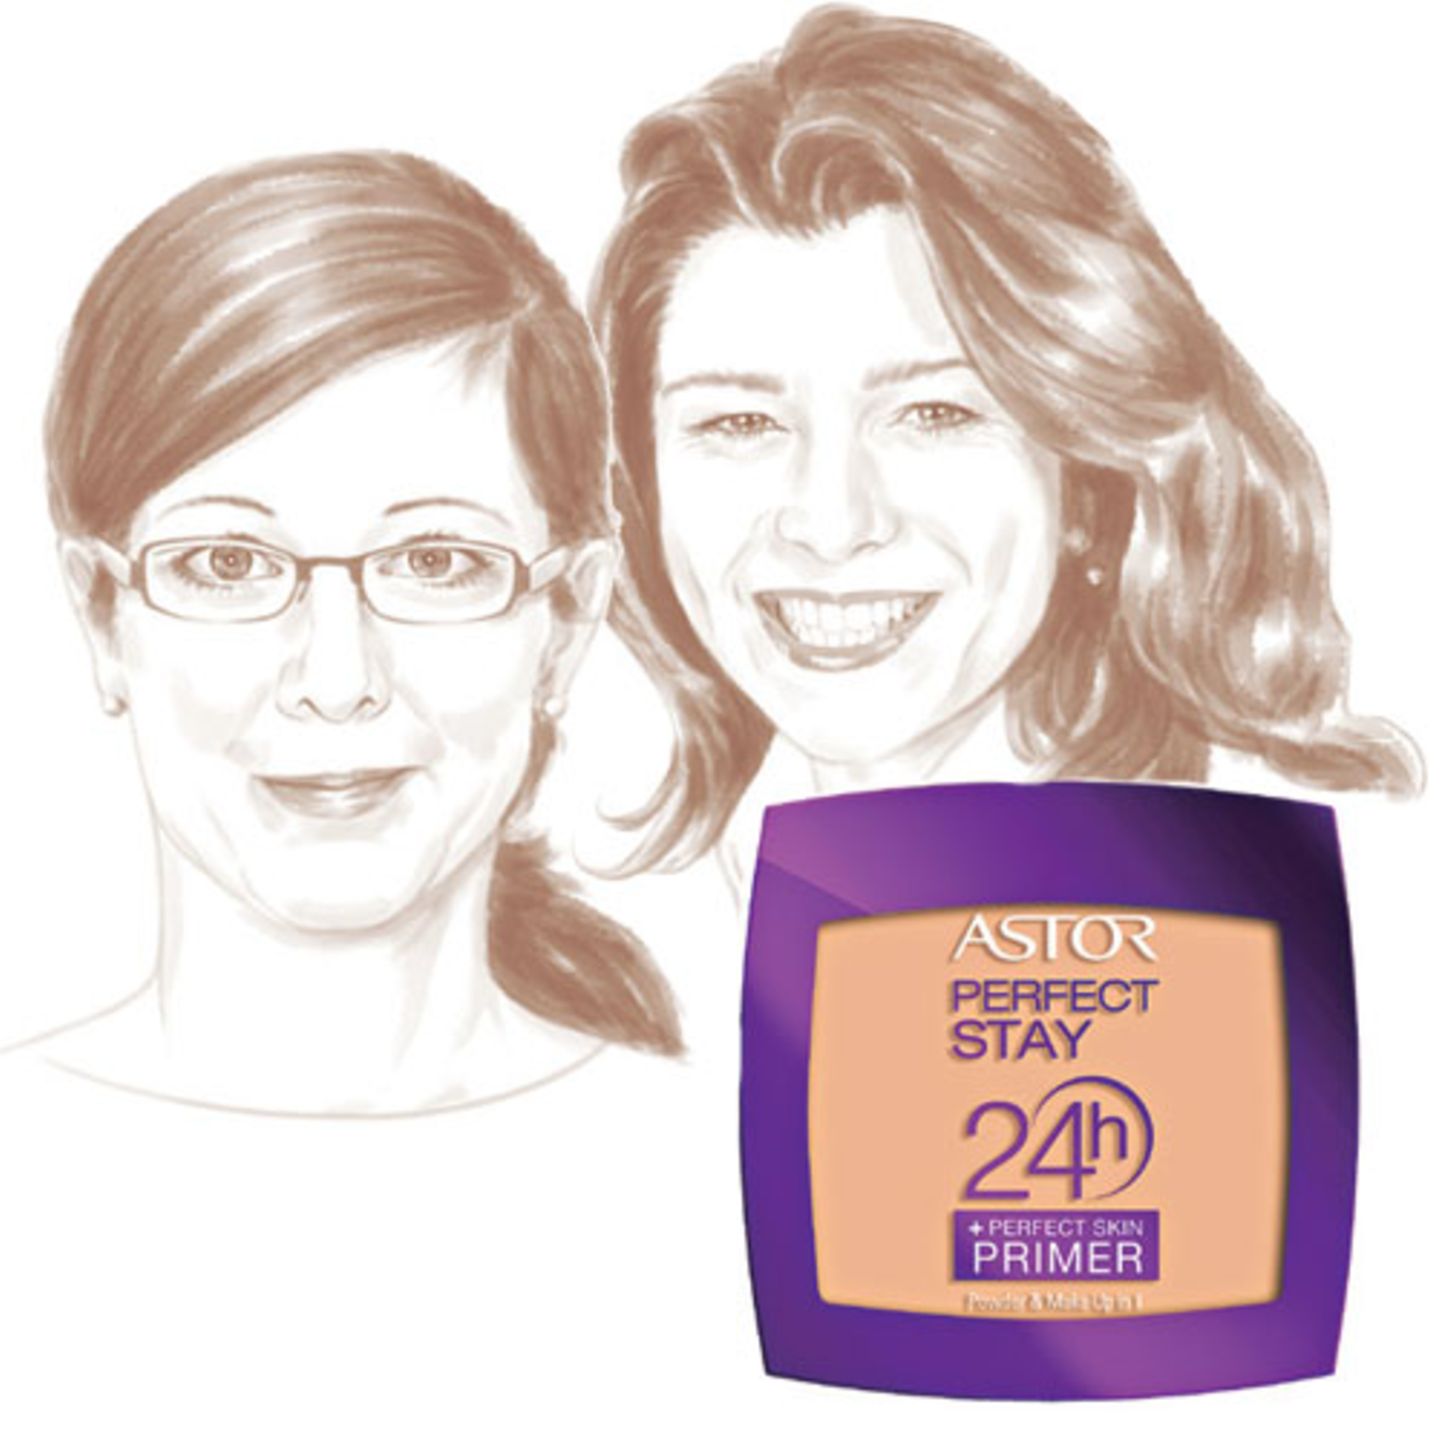 Im Test: "Perfect Stay 24h Puder + Perfect Skin Primer" von Astor